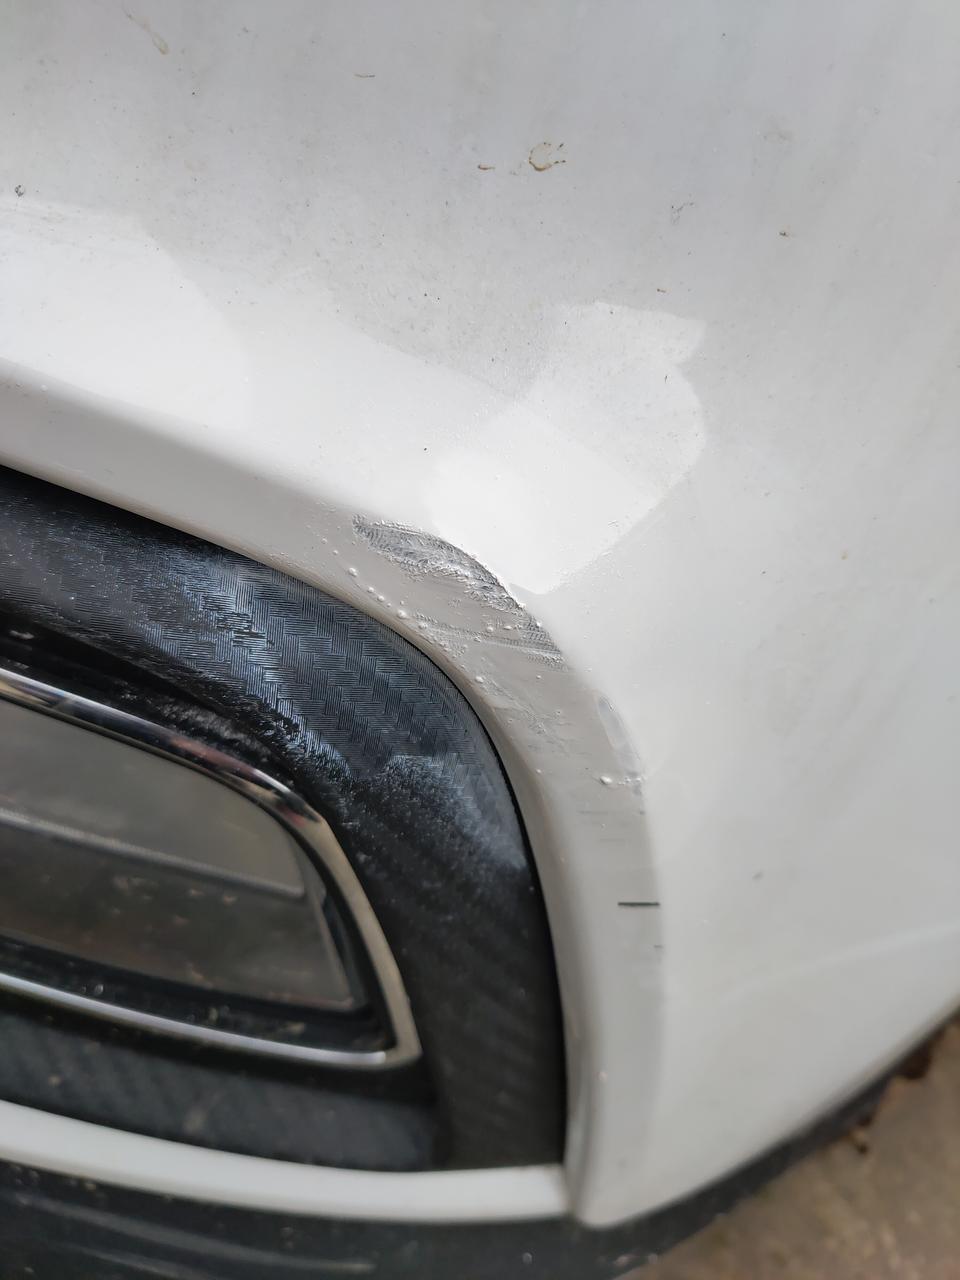 荣威rx5今天拐大门口的时候擦了下墙，左前雾灯上沿白漆蹭的漏底漆了，喷了两下自喷漆但还能看出来，请教下老司机怎么修复！